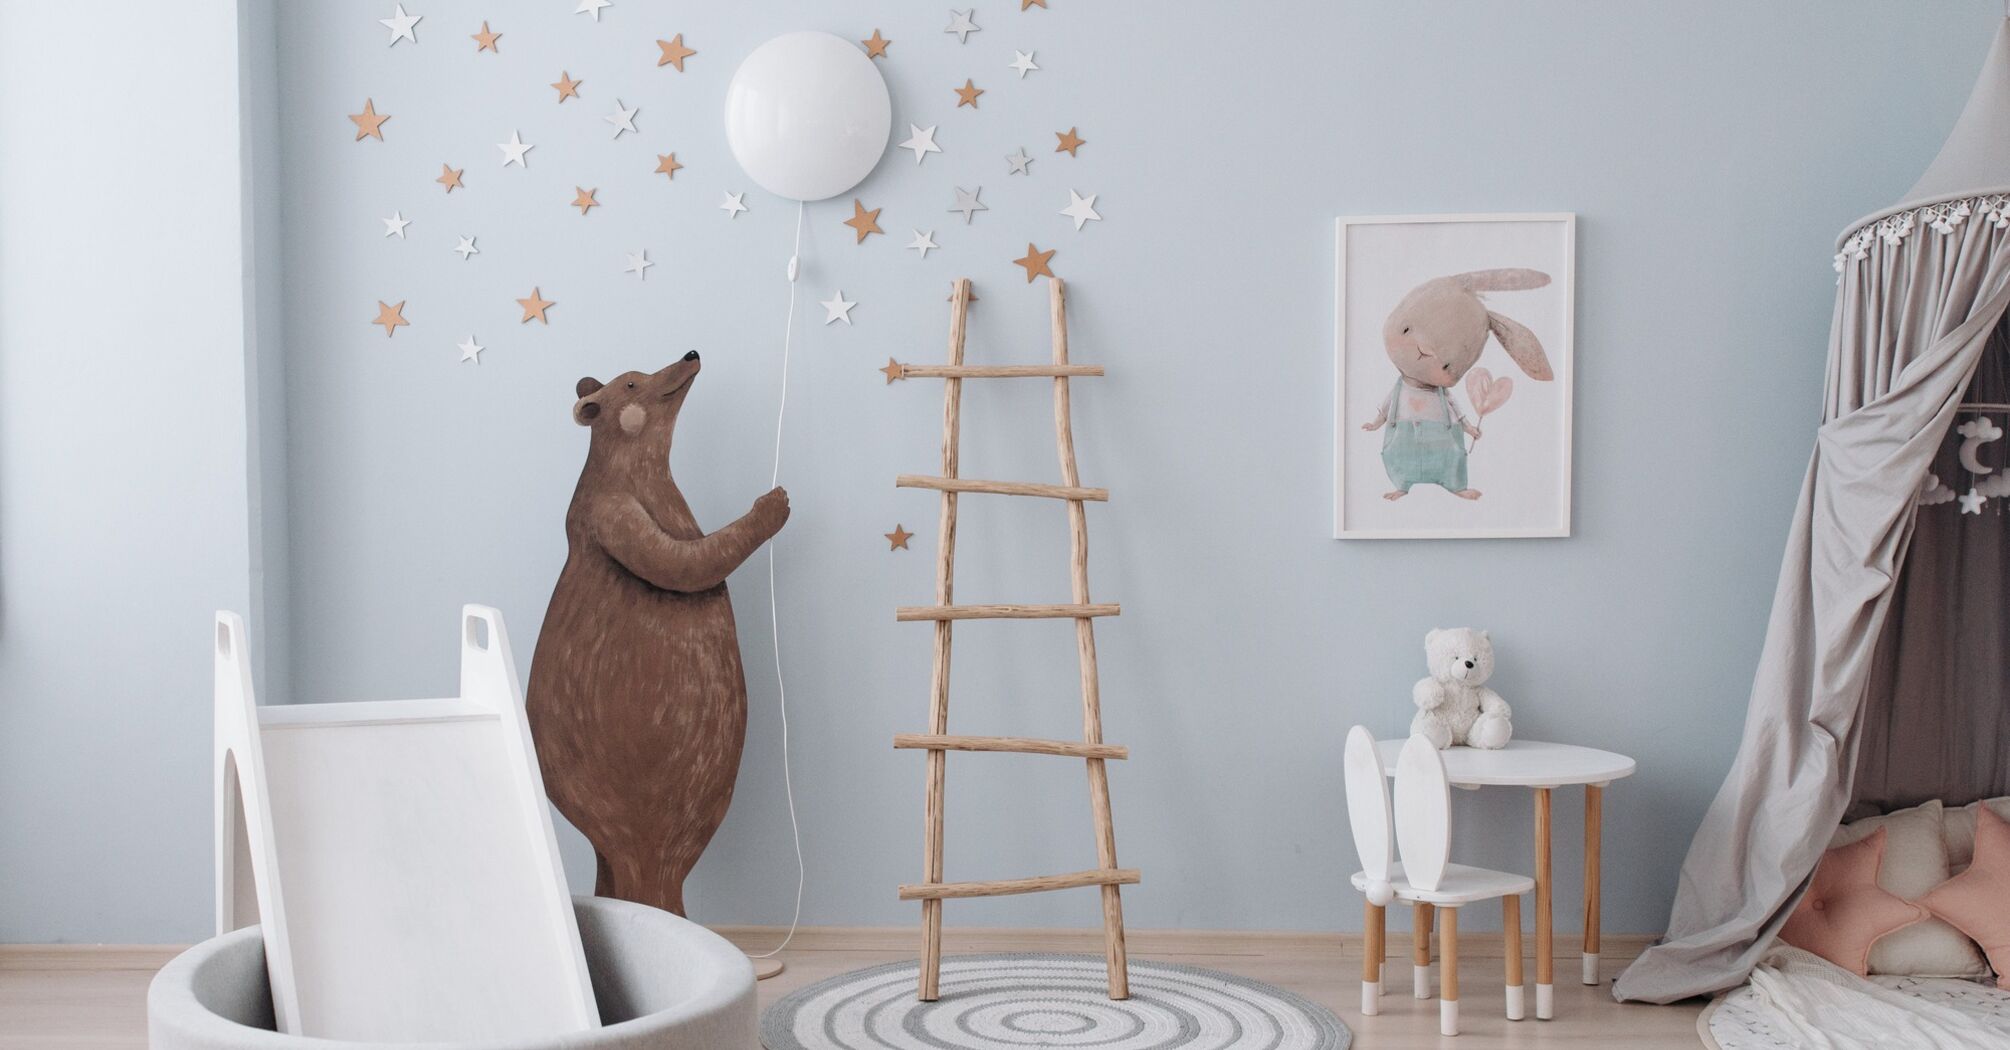 Выбор правильного цвета мебели для детской комнаты